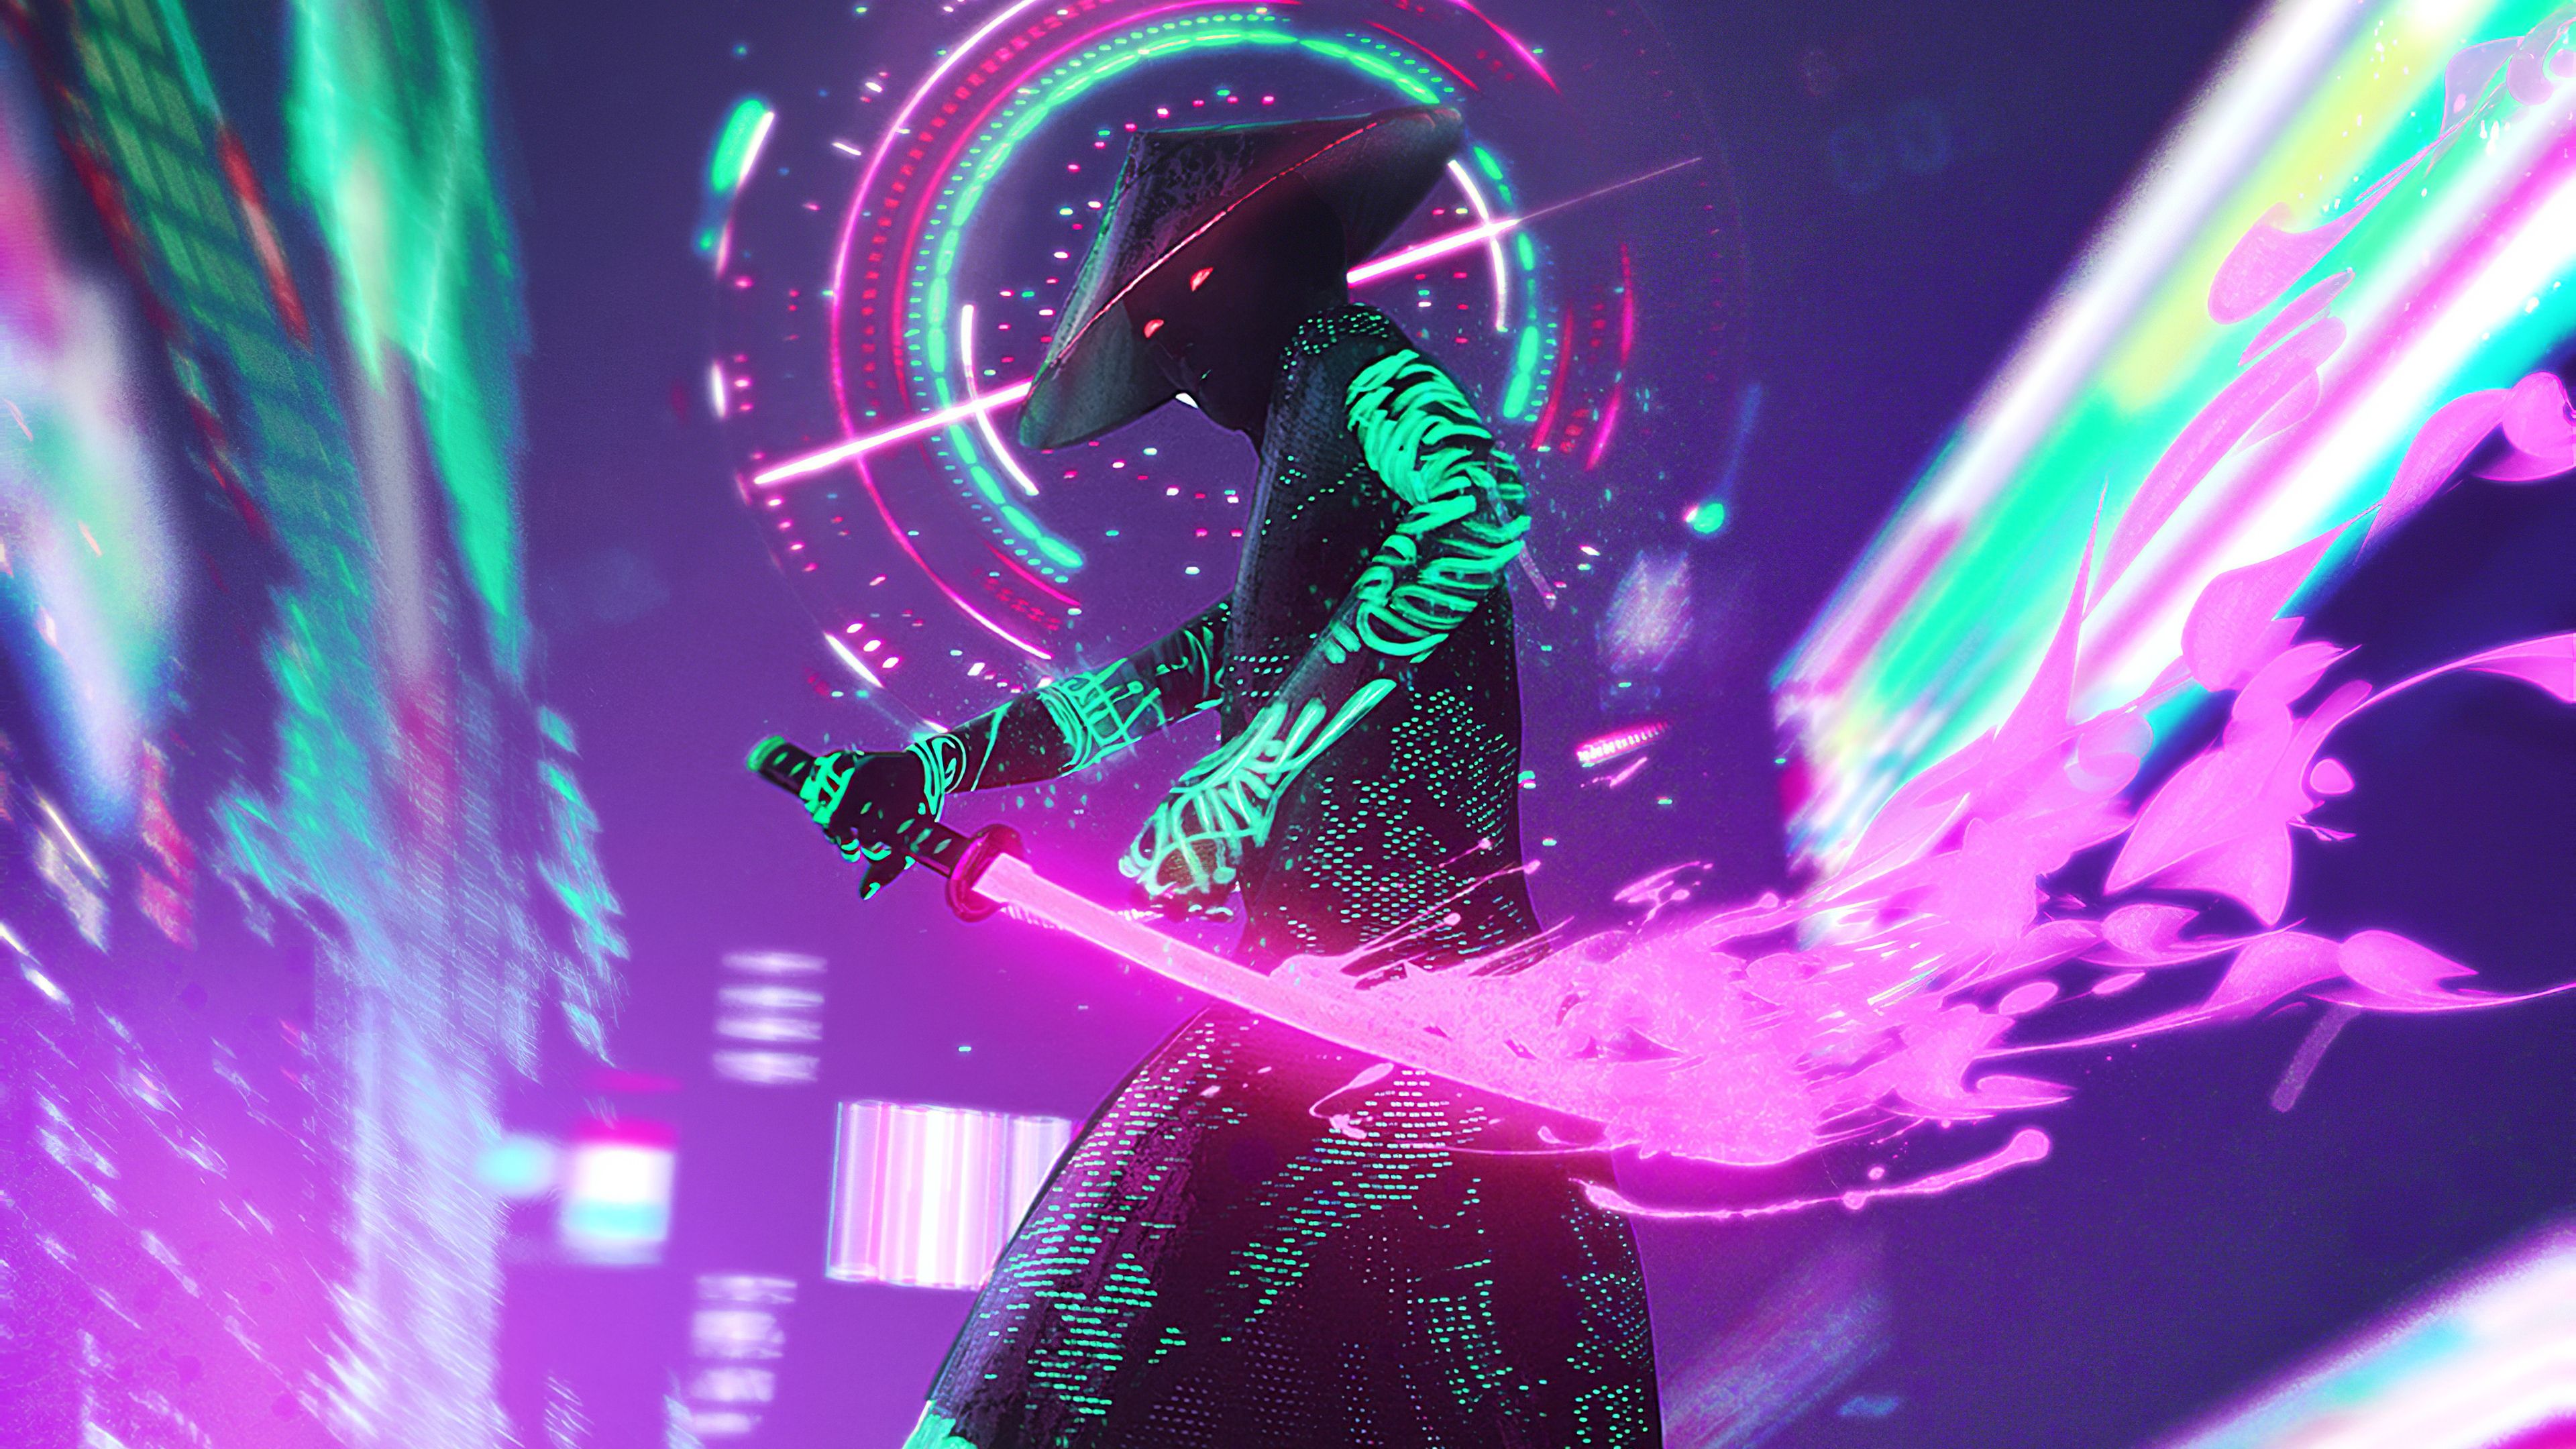 Cyberpunk Neon With Sword 4k, HD Artist, 4k Wallpaper, Image